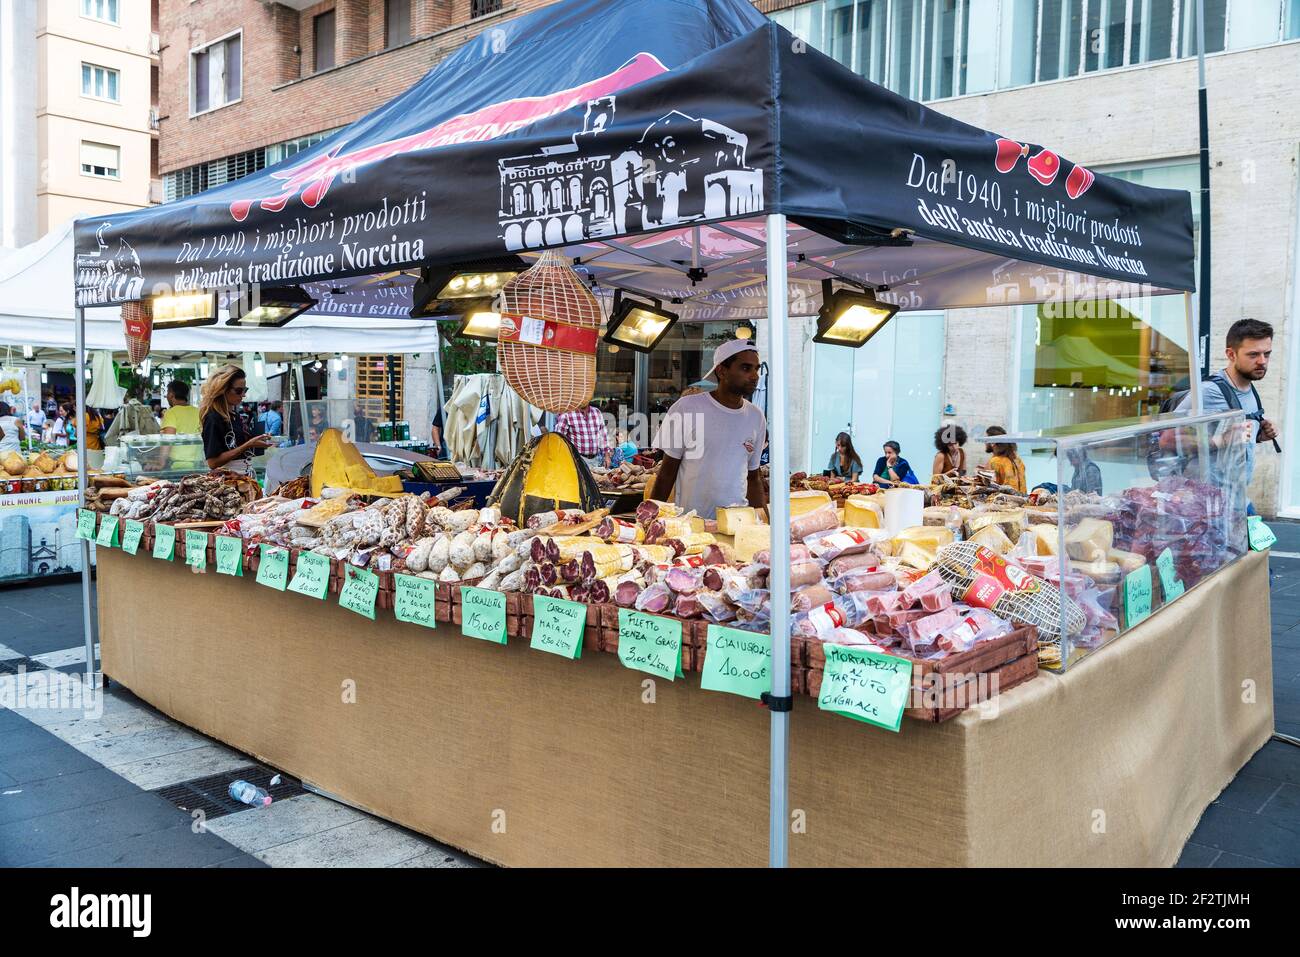 Napoli, Italia - 9 settembre 2019: Venditore in un negozio di formaggi e salsicce in un mercato di Street food con persone in giro in Via Toledo, Napoli, Italia Foto Stock